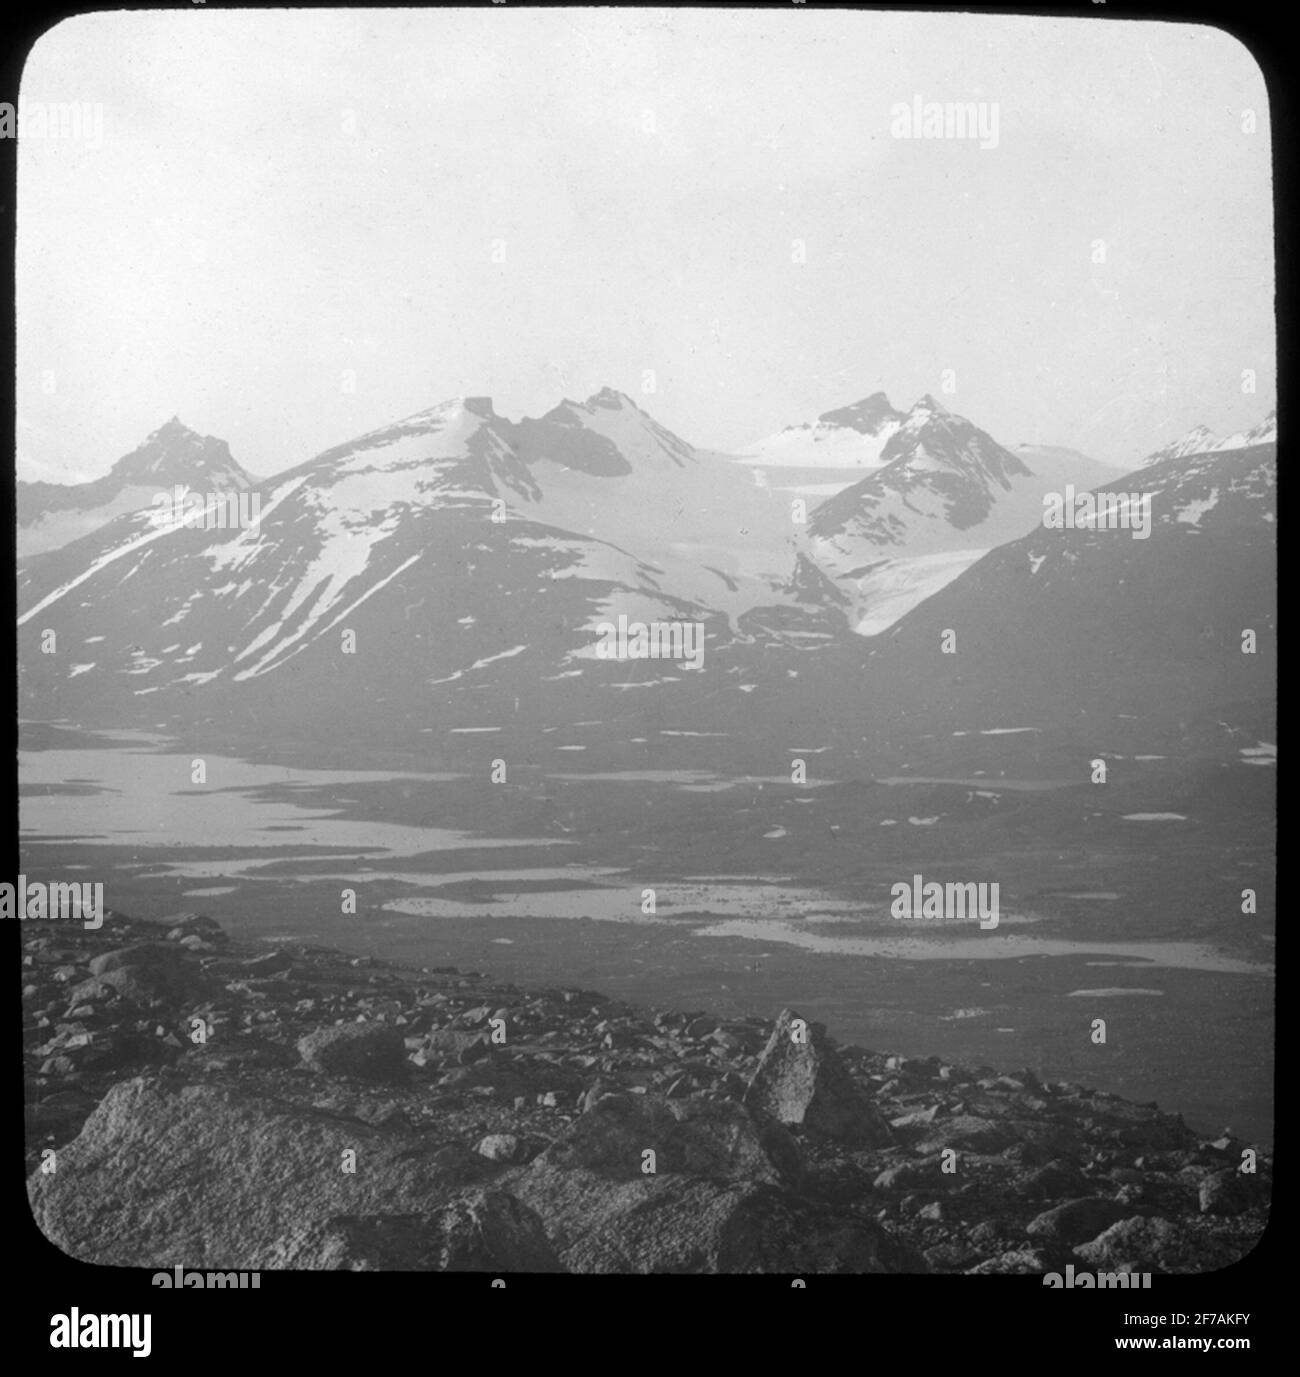 Skiopticon-Bild aus der Abteilung für Fotografie am Royal Institute of Technology. Motifus mit Ansichten von schneebedeckten Bergen. Das Bild wurde wahrscheinlich von John Hertzberg während einer Reise in Schweden aufgenommen. Stockfoto